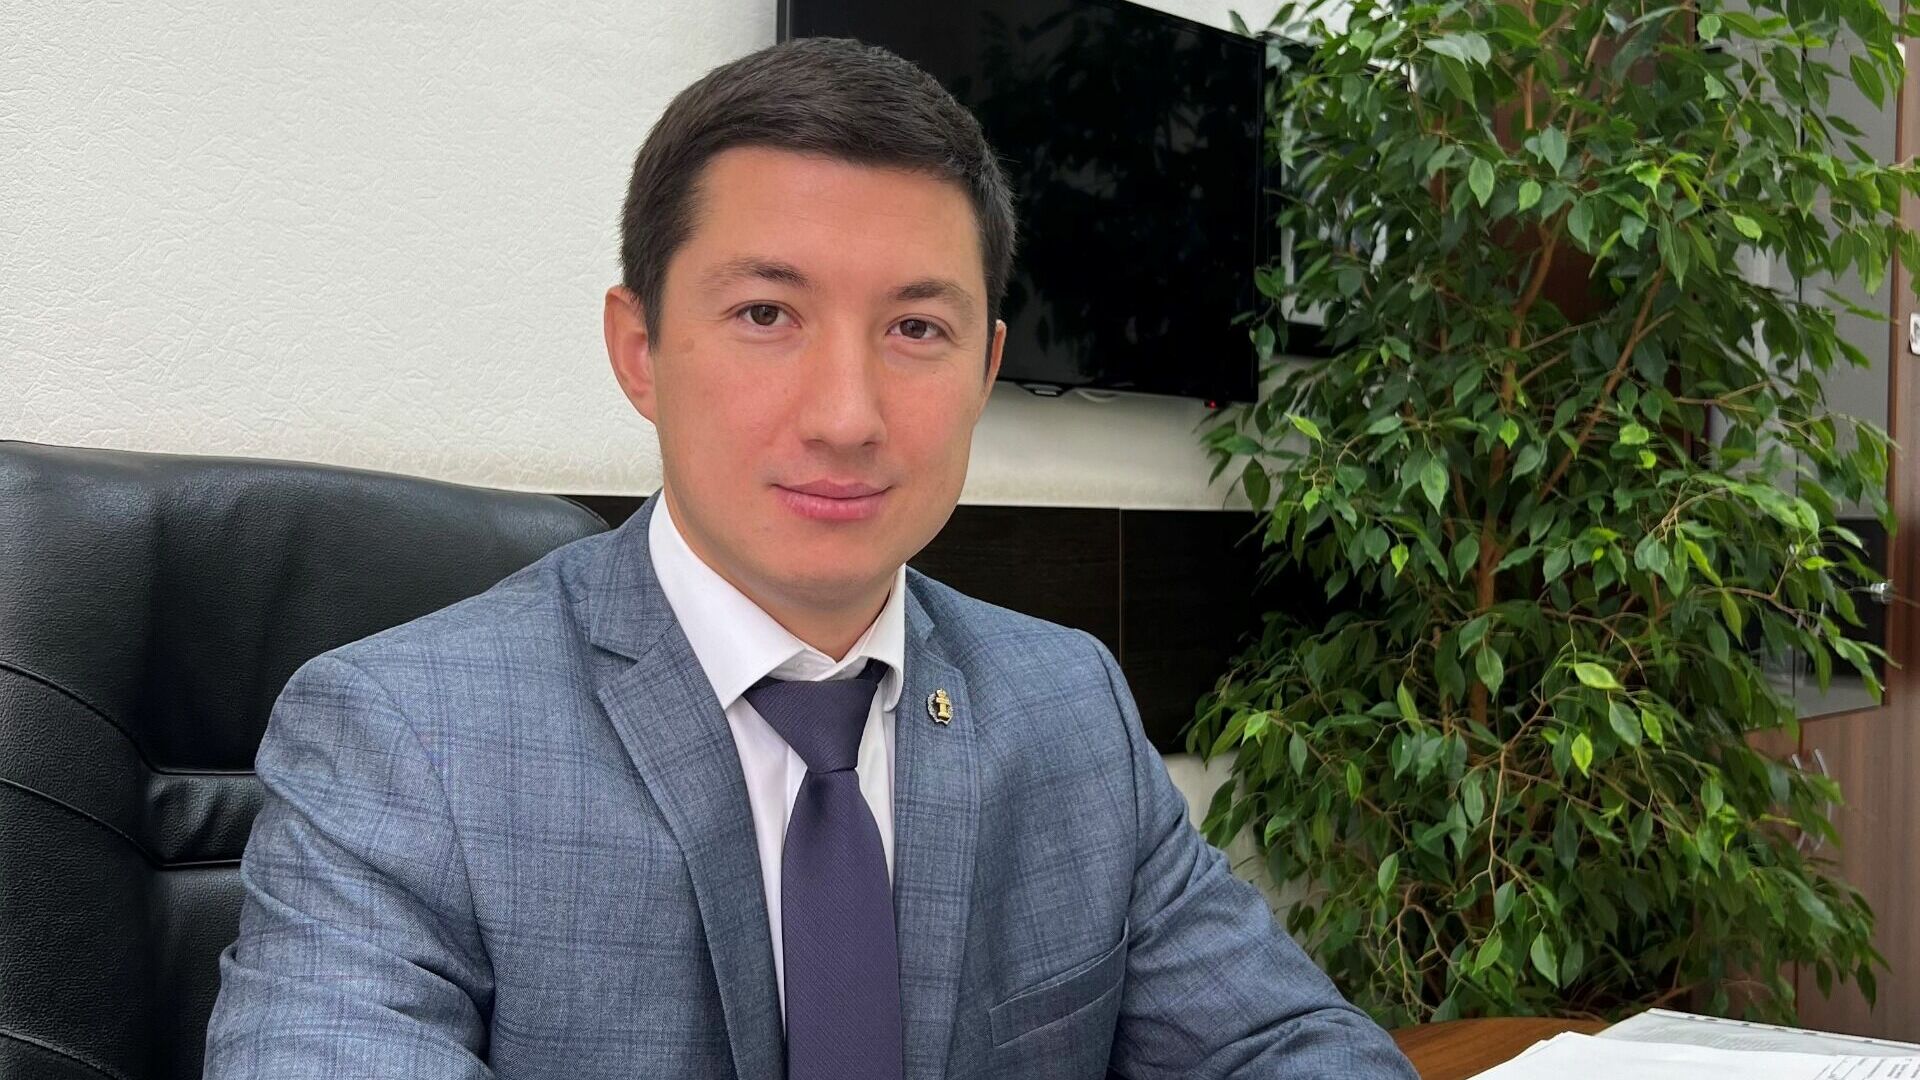 Адвокатскую коллегию Башкирии возглавил сын её бывшего руководителя Денис Юмадилов